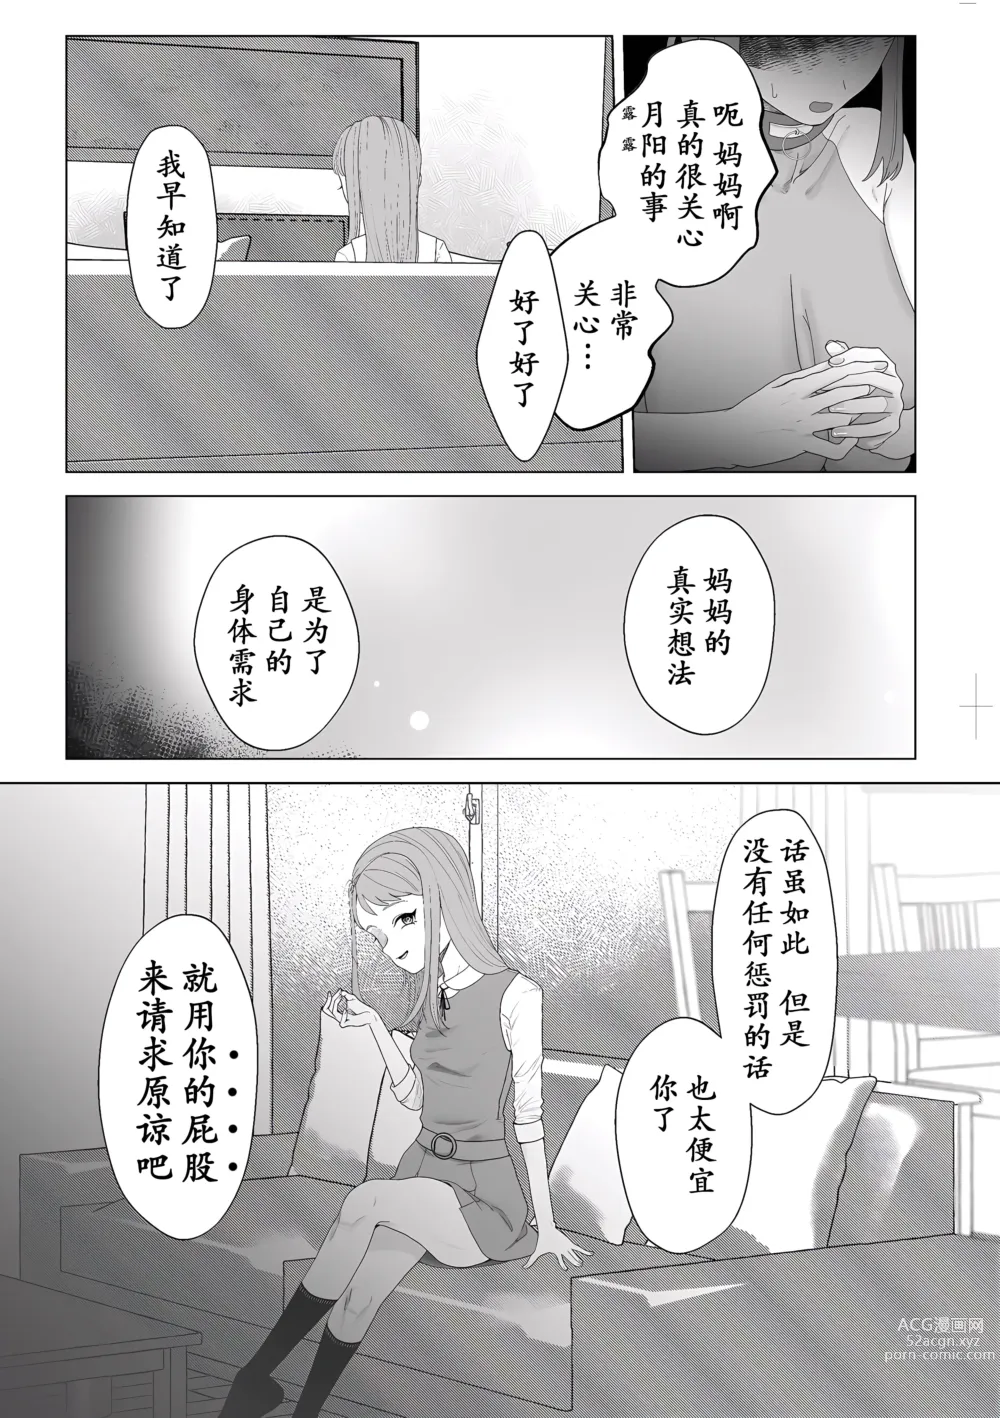 Page 23 of manga Mama wa Petto